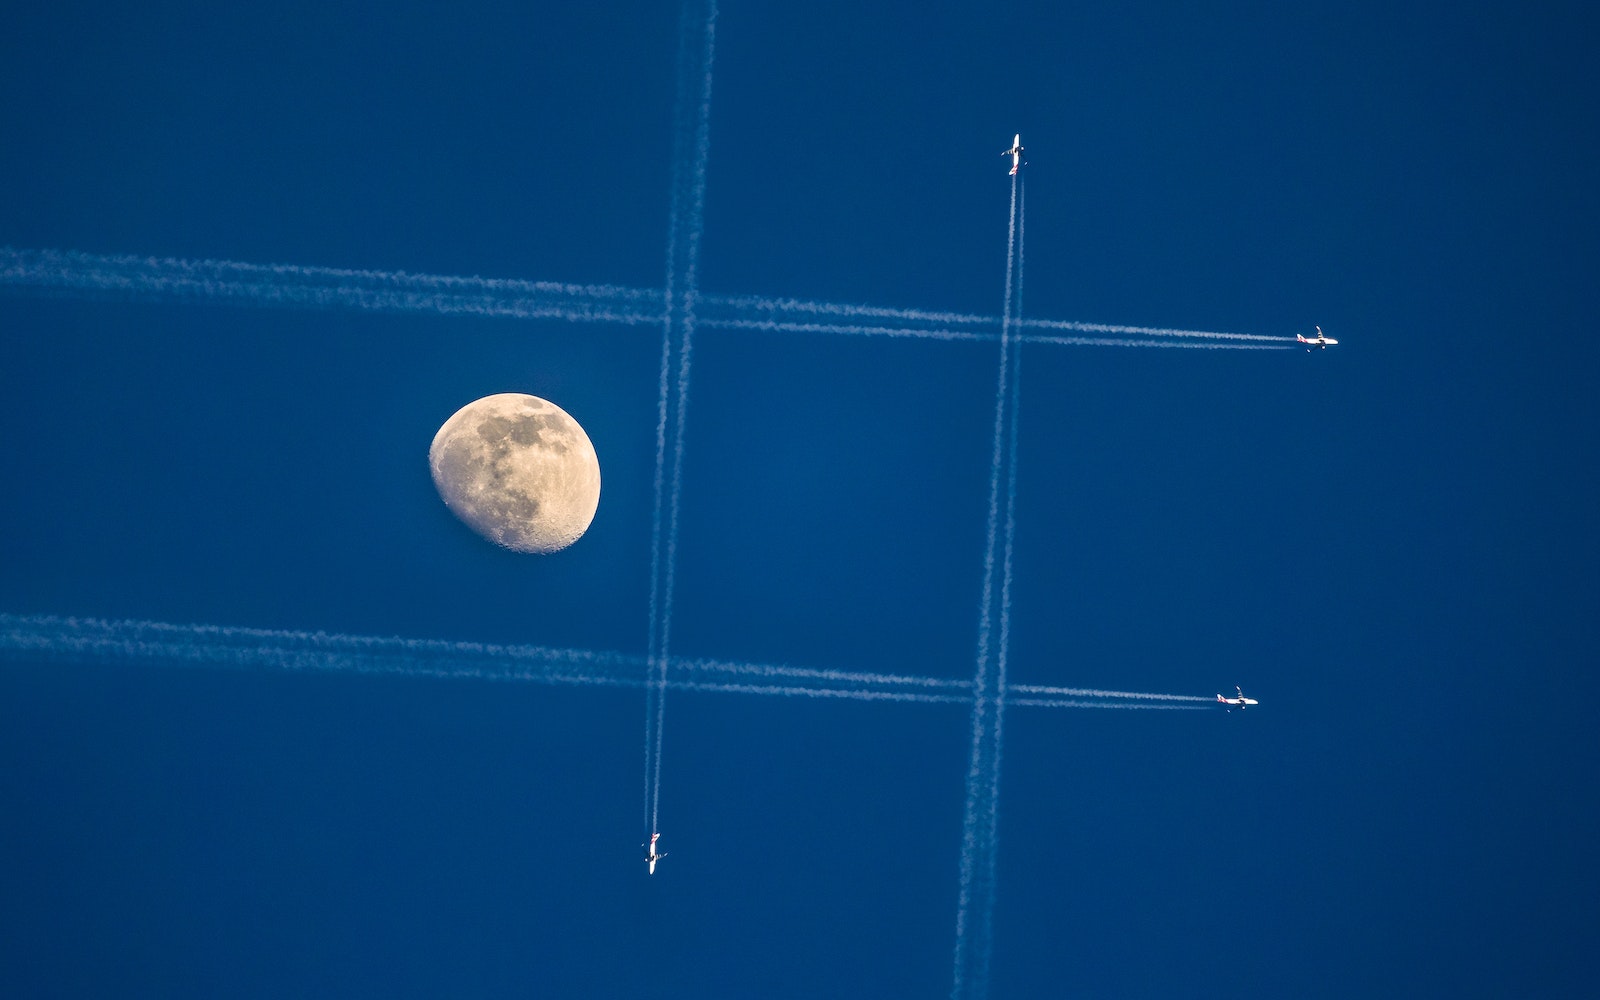 Jet Air Show on Clear Blue Sky Near Moon